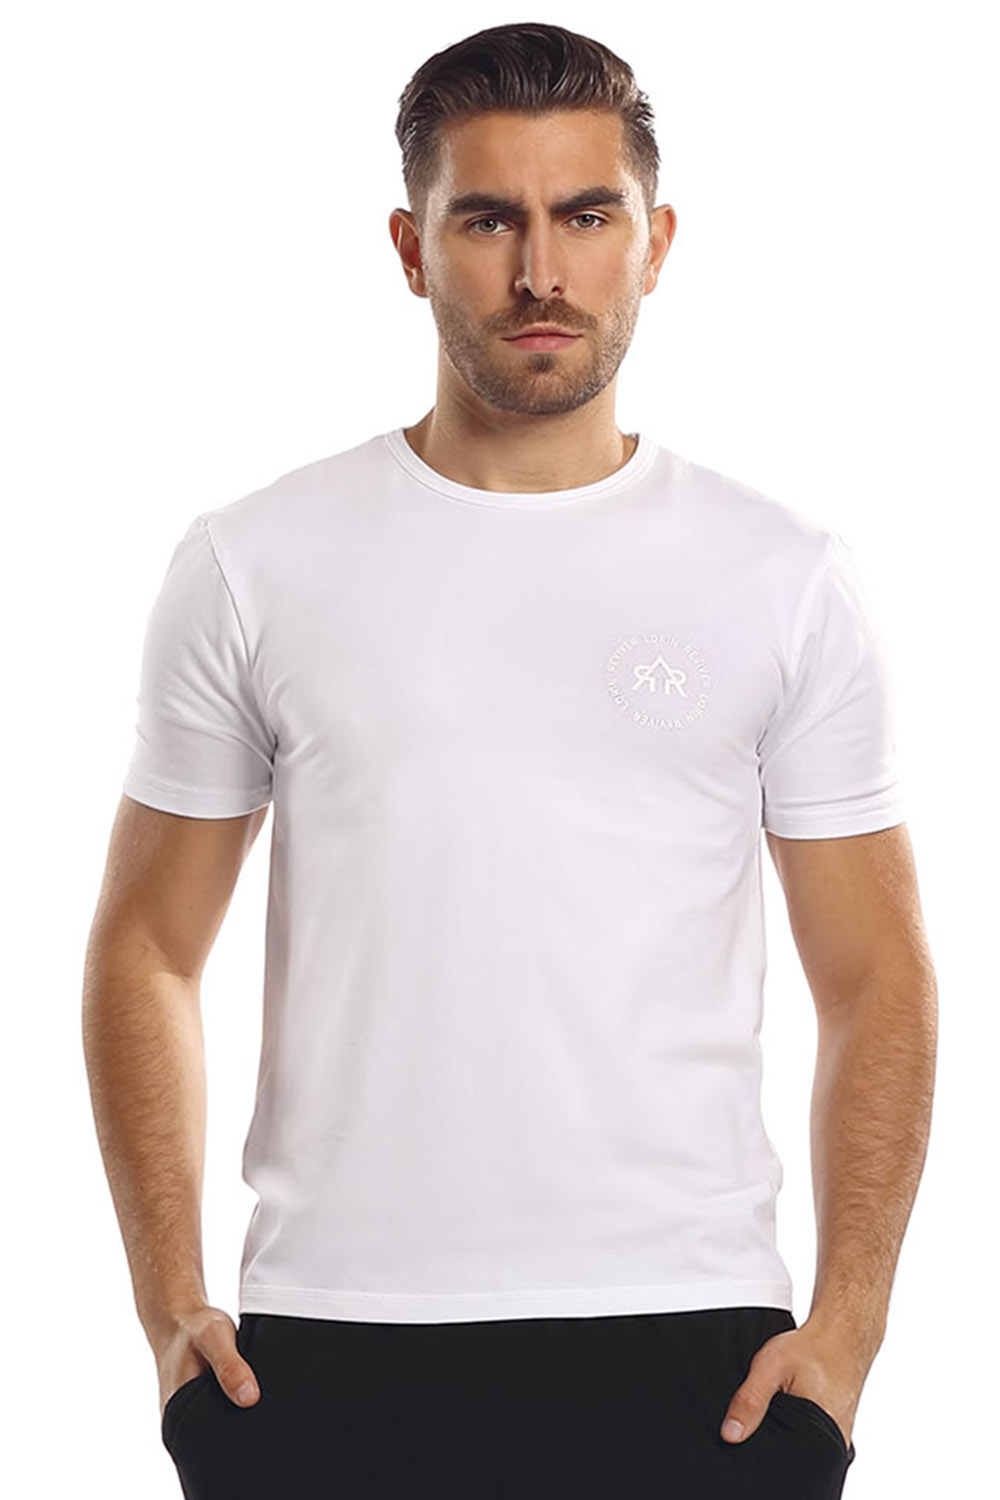 Reviver F5558 Koszulka t-shirt, bia³y